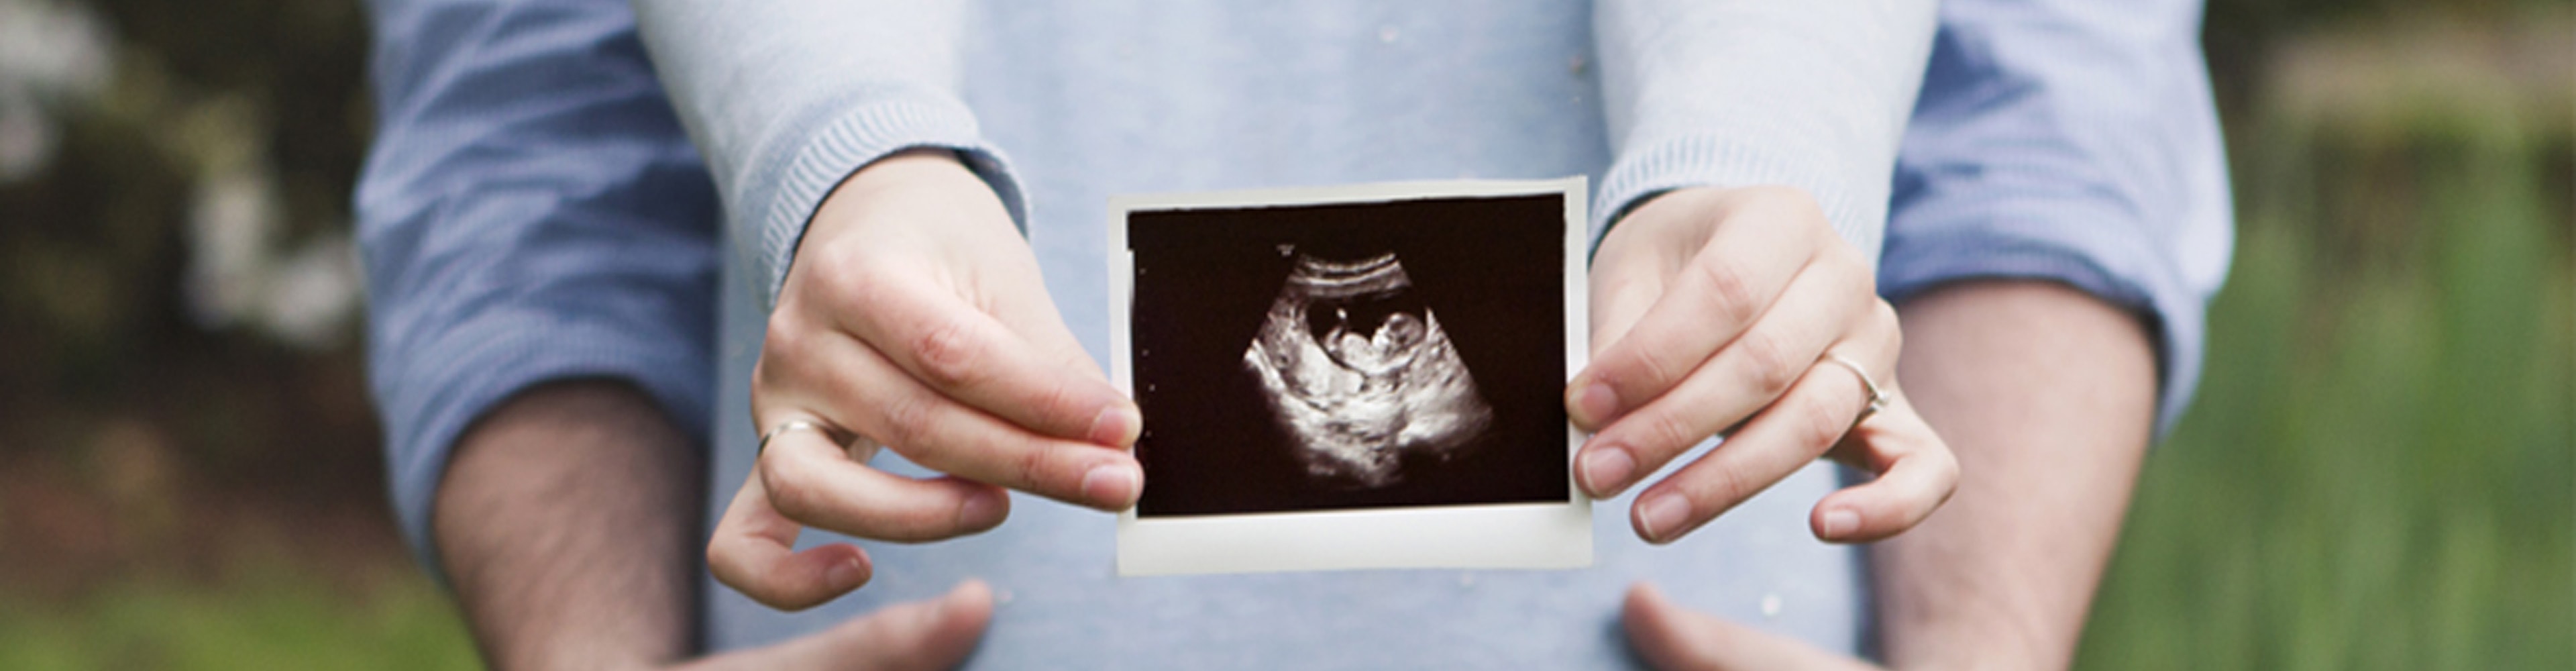 Ultraschall in der Schwangerschaft Pro & Contra